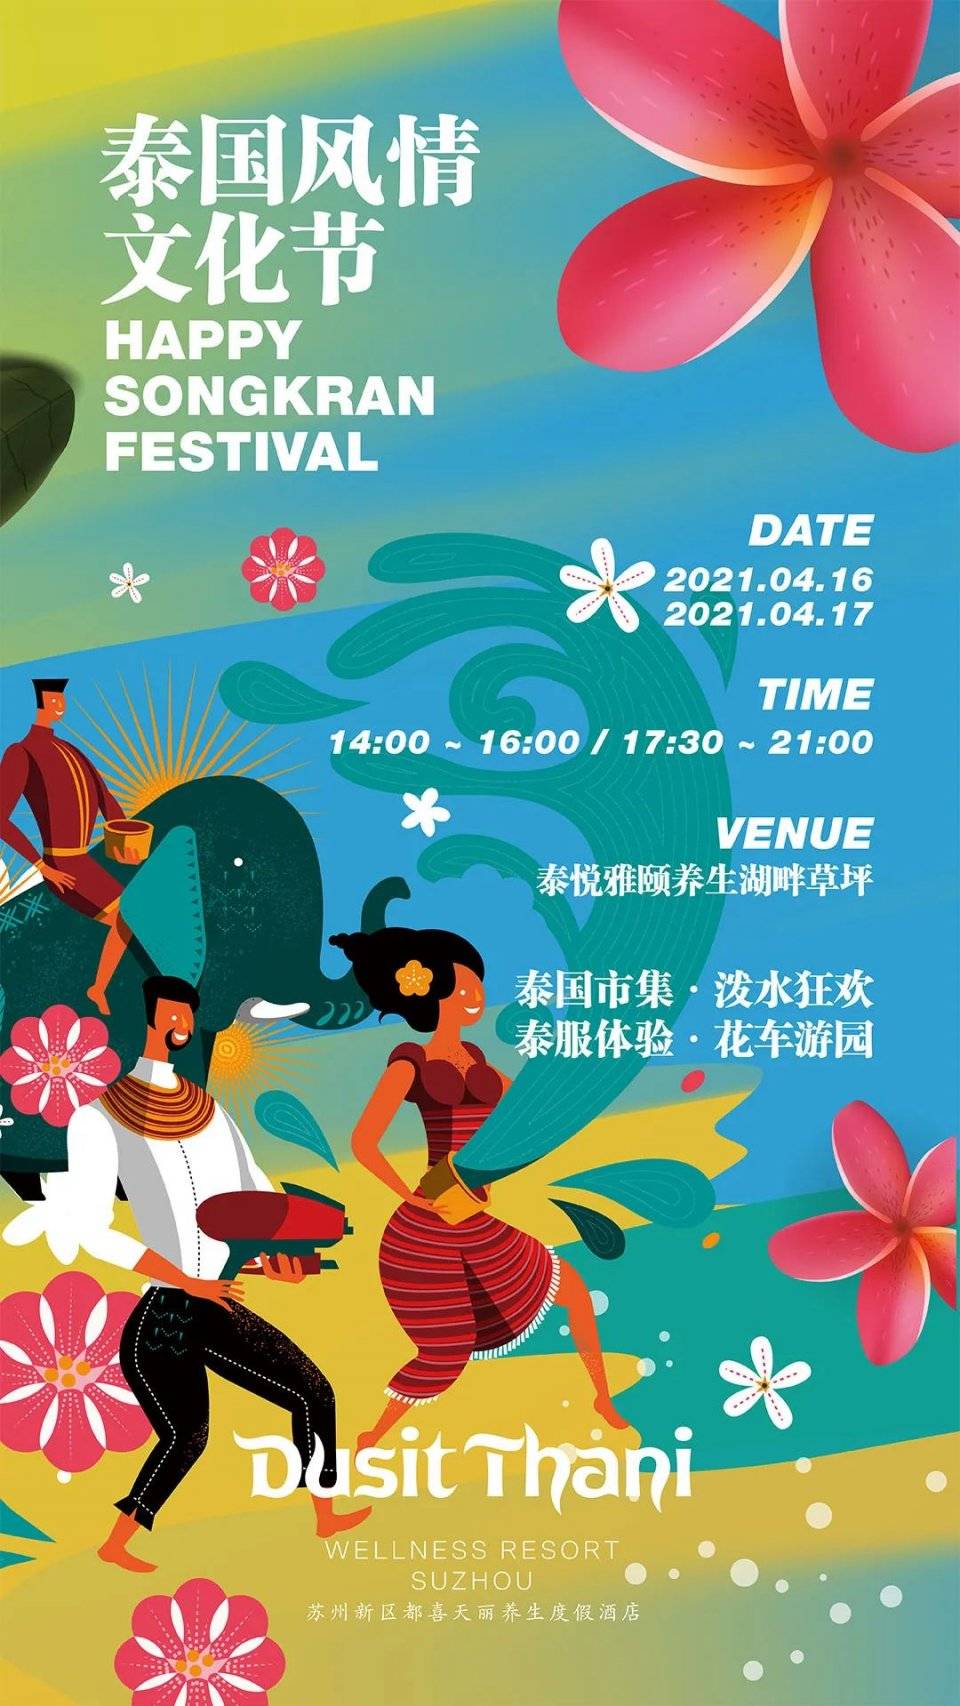 泰国风情文化节 · happy songkran festival